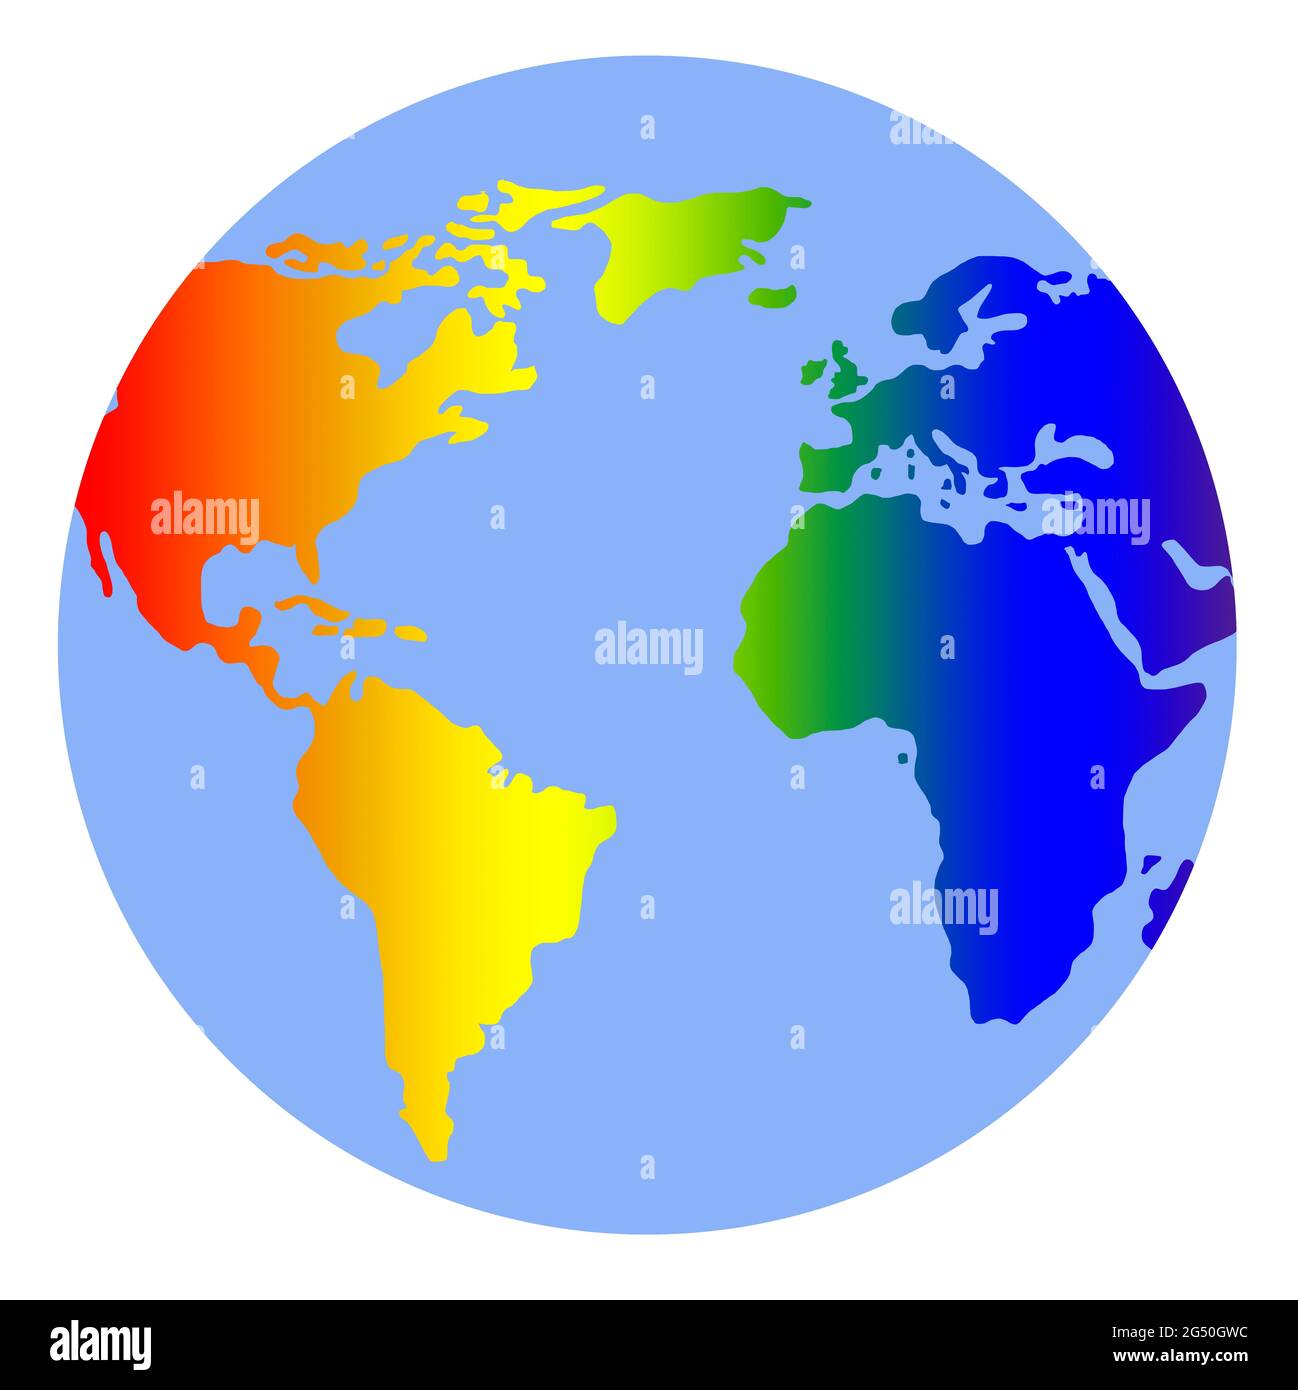 Die Erde in Regenbogen Farben - Symbol für mehr Toleranz Stock Photo